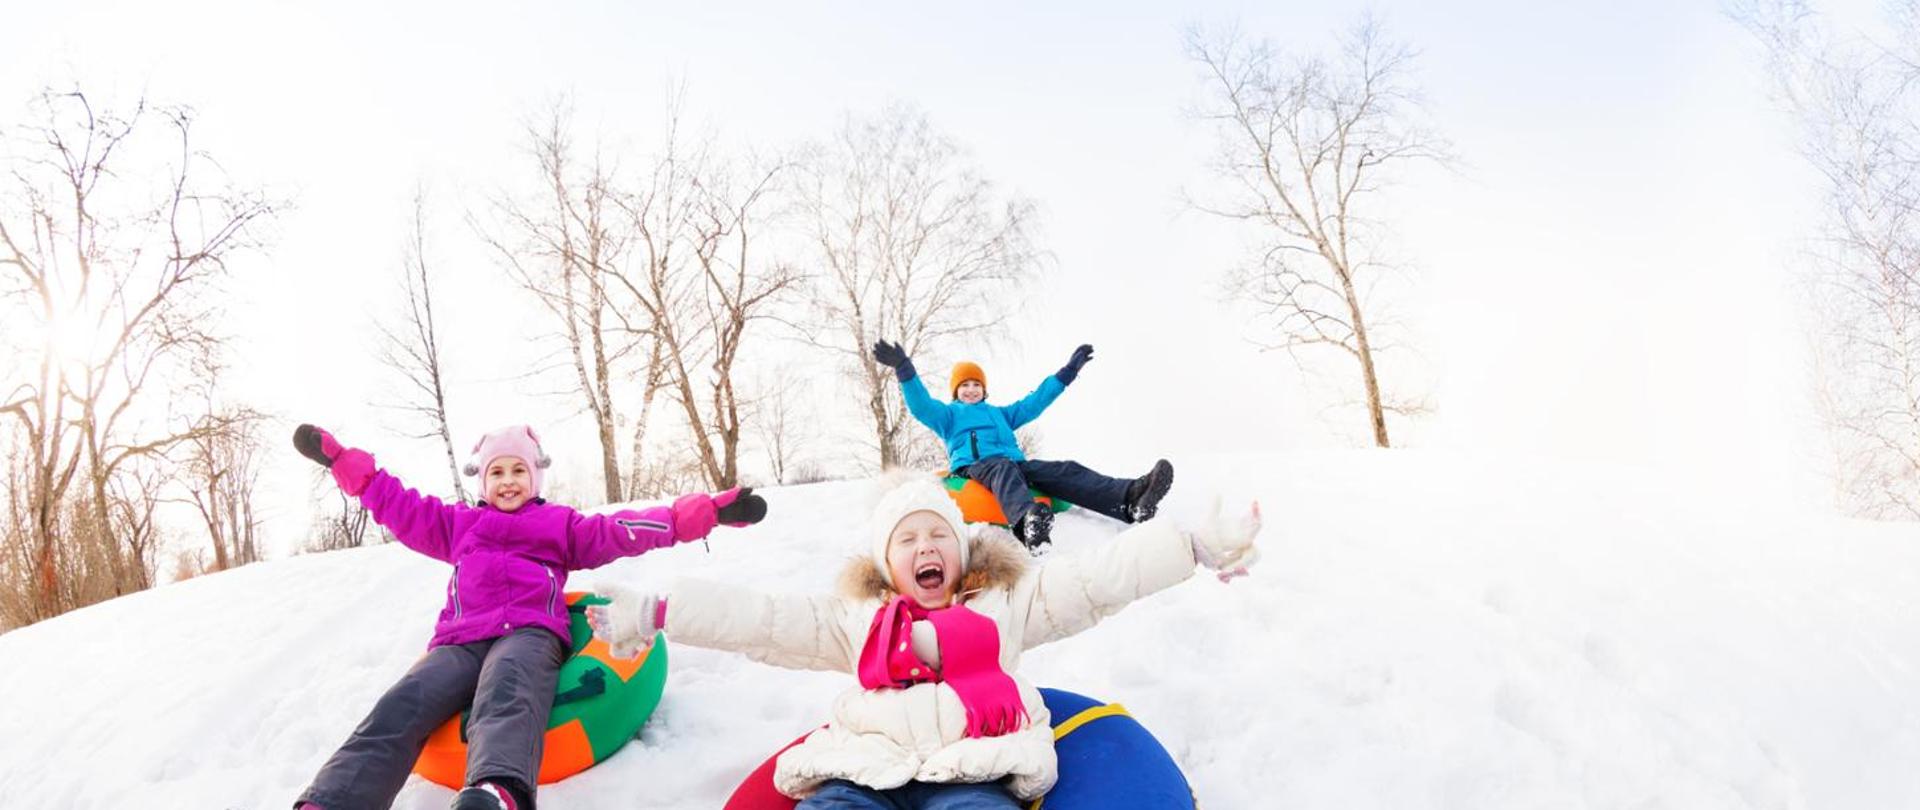 Podekscytowana grupa dzieci zjeżdżających razem na górce podczas pięknego zimowego dnia z drzewami w tle.